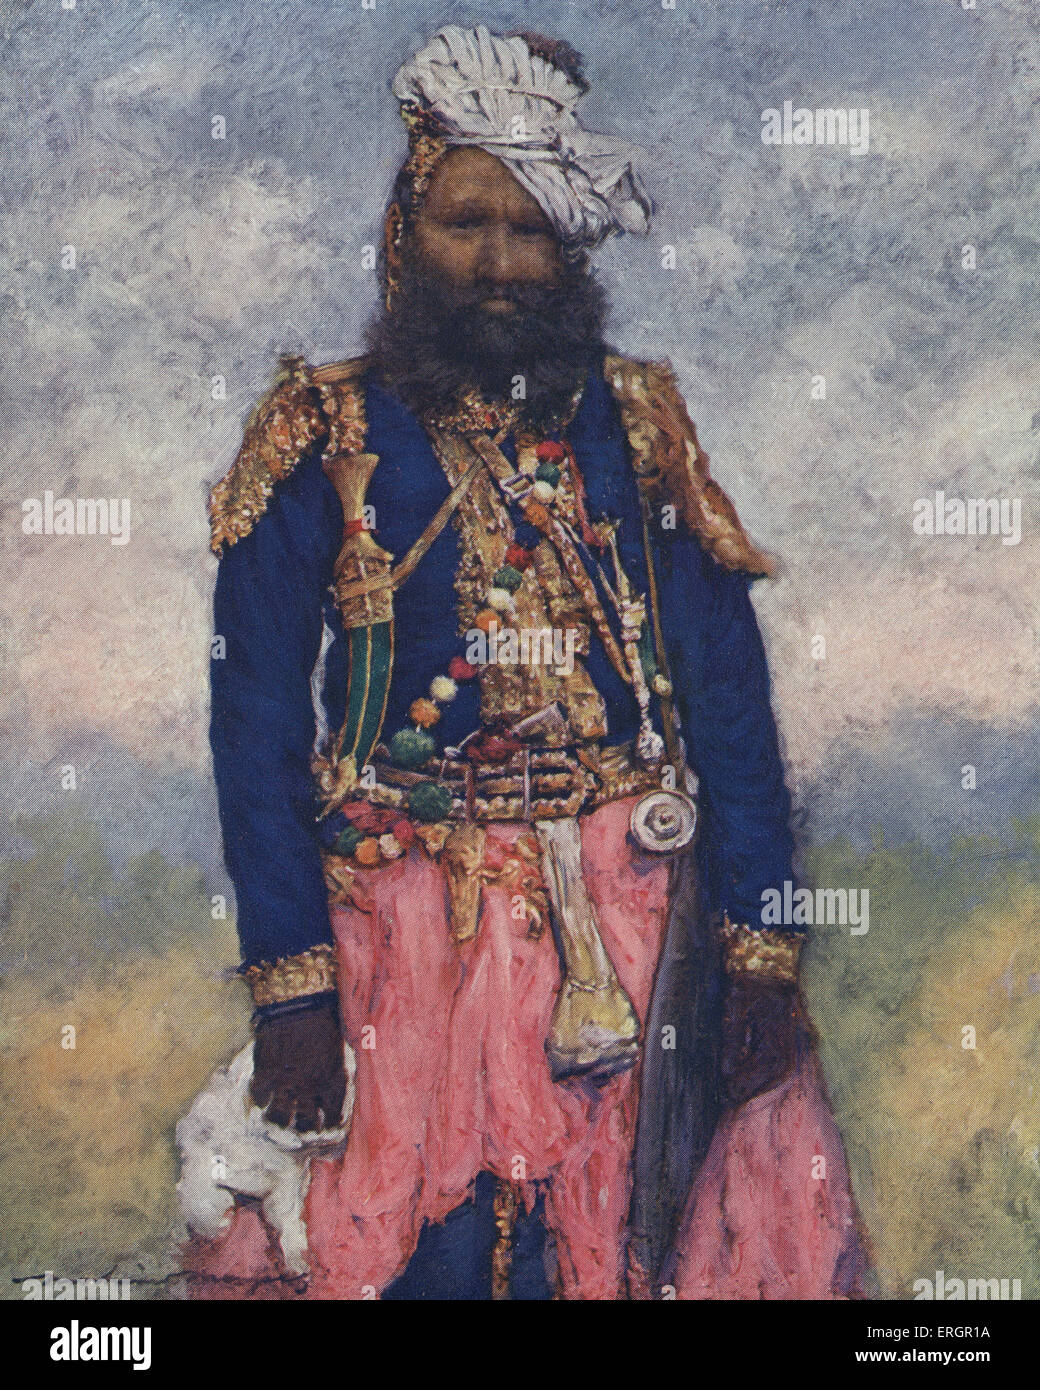 "Halter", ein Soldat von Rajgarh, ein fürstlicher Zustand in Indien während Britisches Raj.  Nach der Abbildung von Mortimer Stockfoto